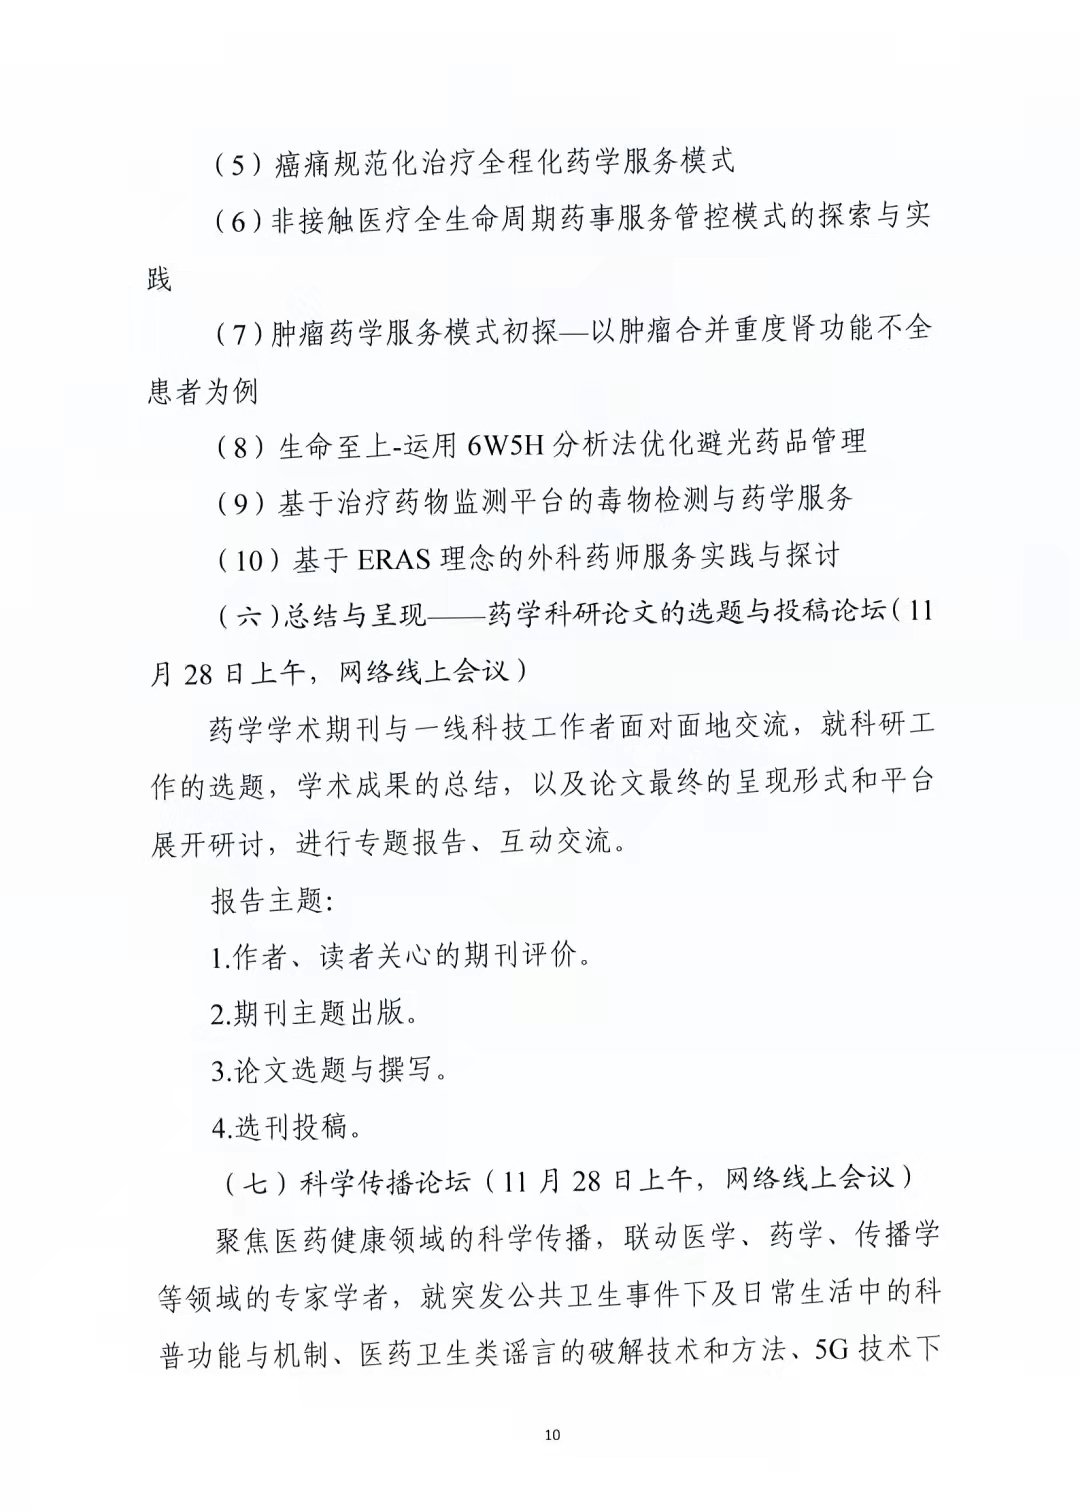 关于举办中国药学会第二十一届中国药师周的通知（第二轮）(图10)